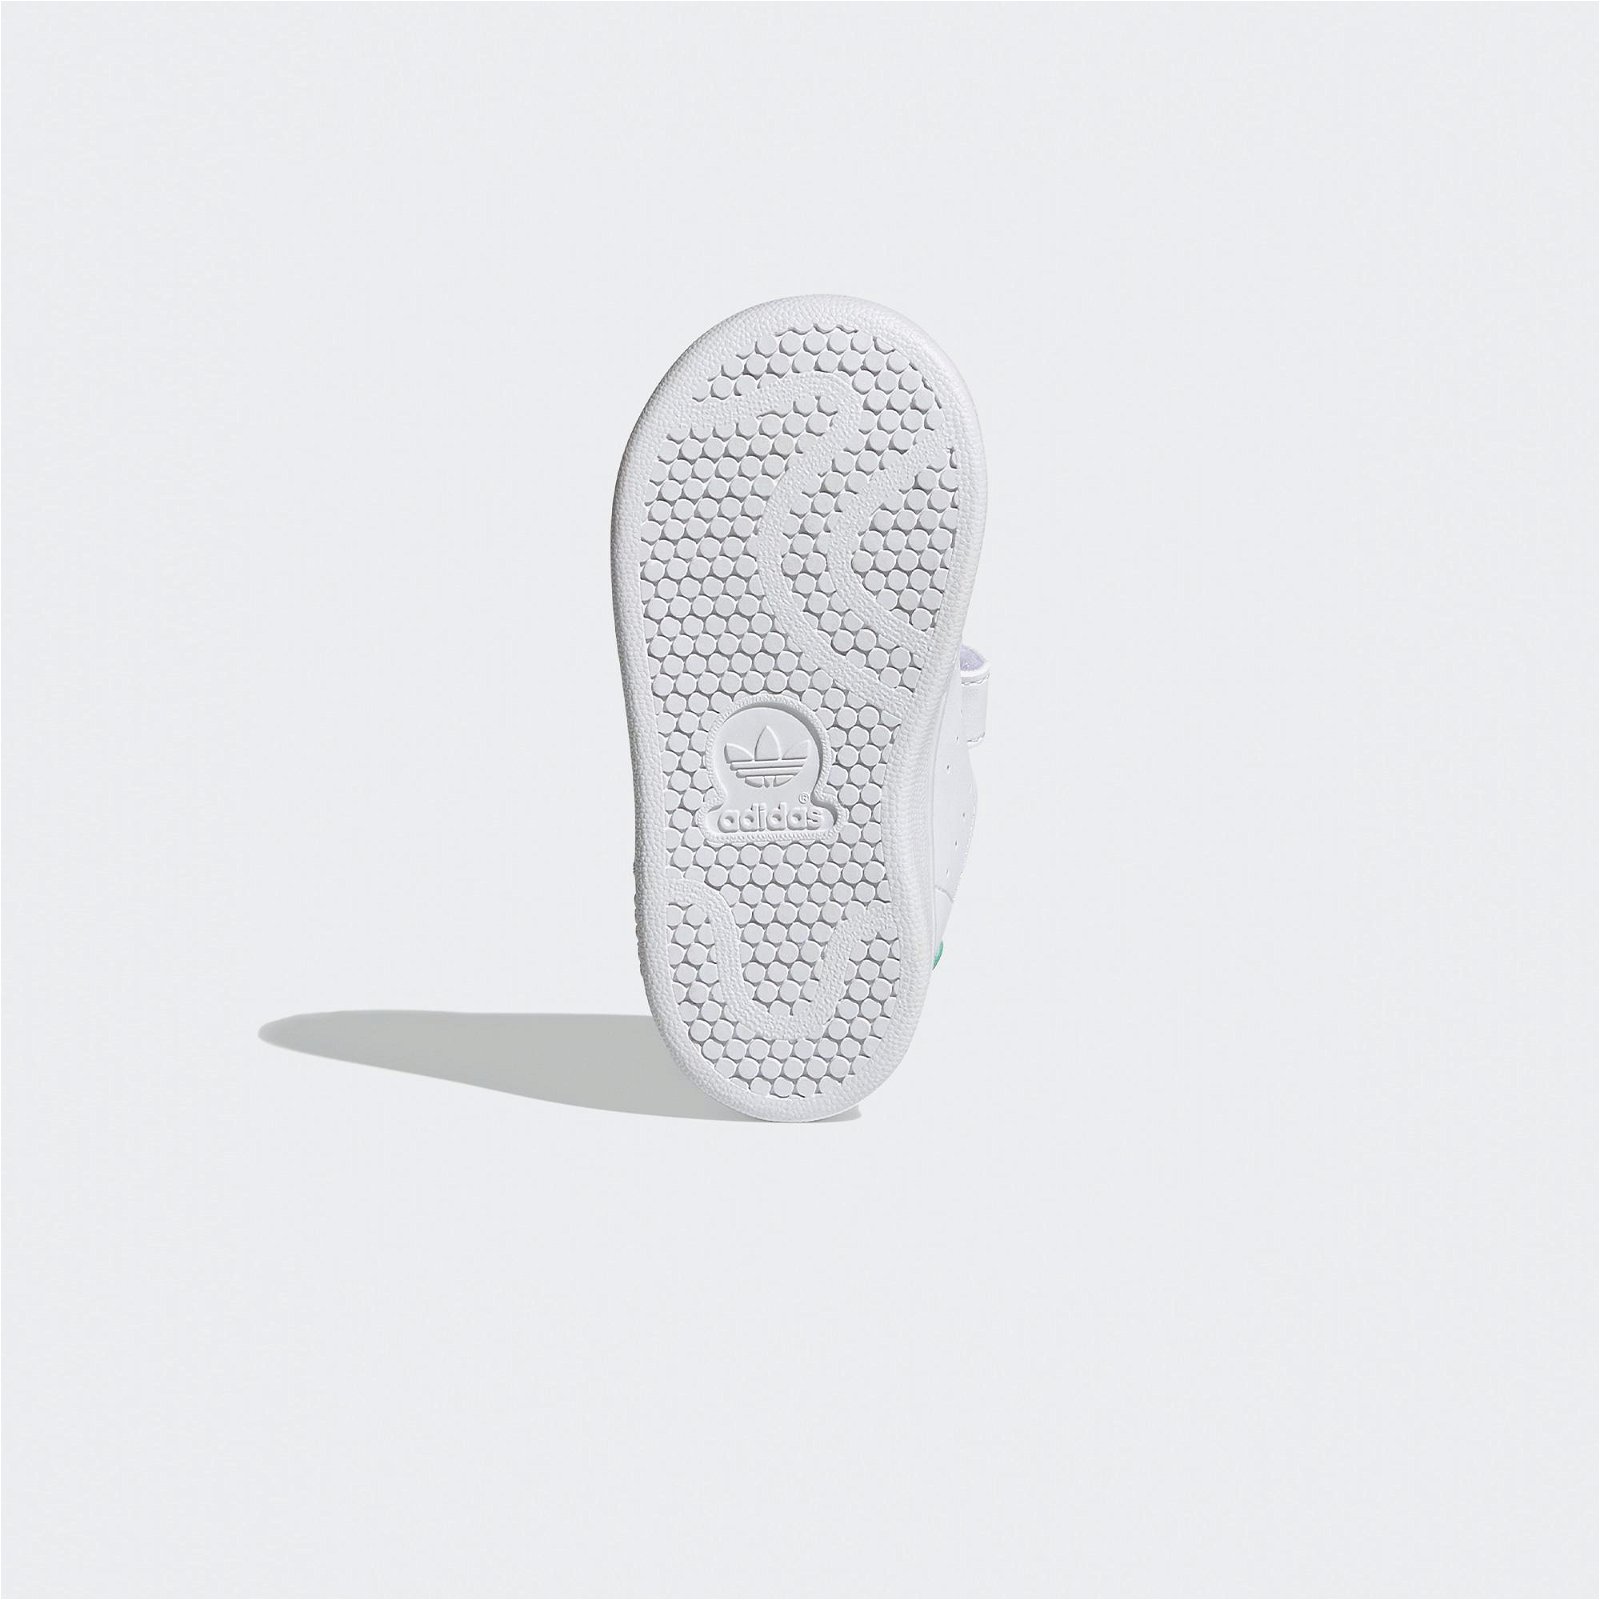 adidas Stan Smith Bebek Yeşil-Beyaz Spor Ayakkabı